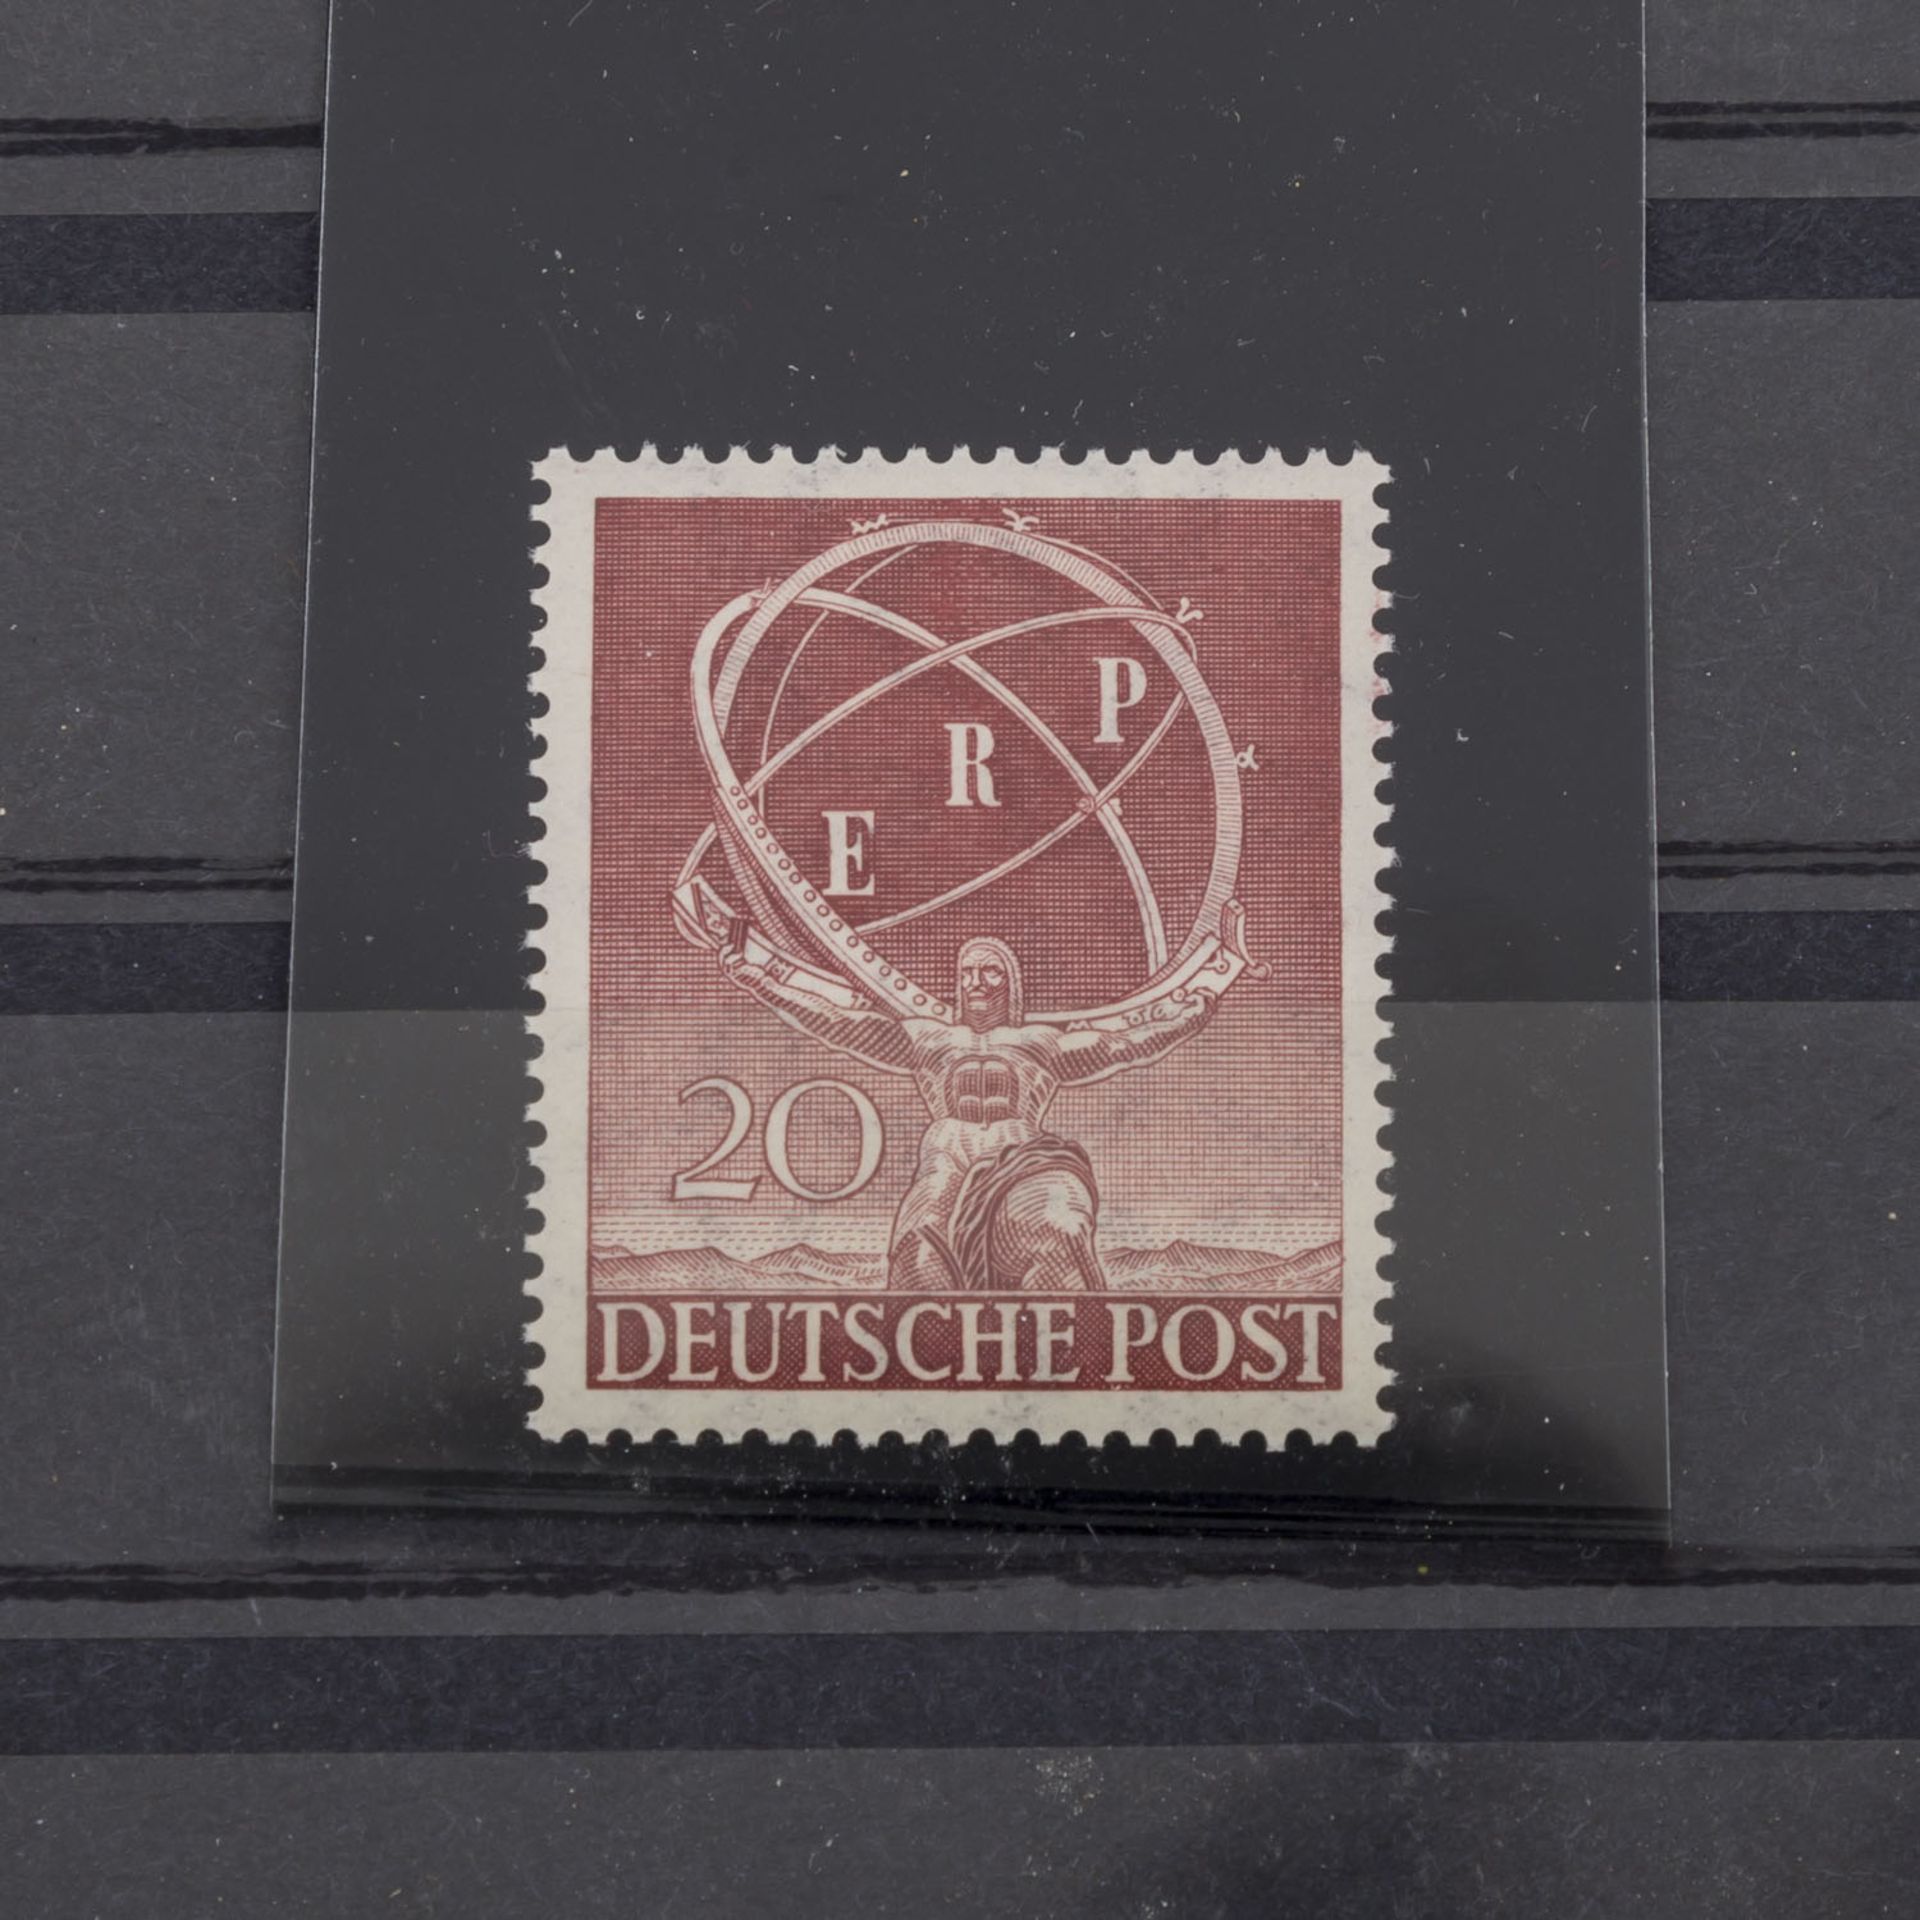 Berlin 1950 20 Pf. ERP Michel Nr. 71y,postfrisch mit seltener Abart "Fehlender Ring im